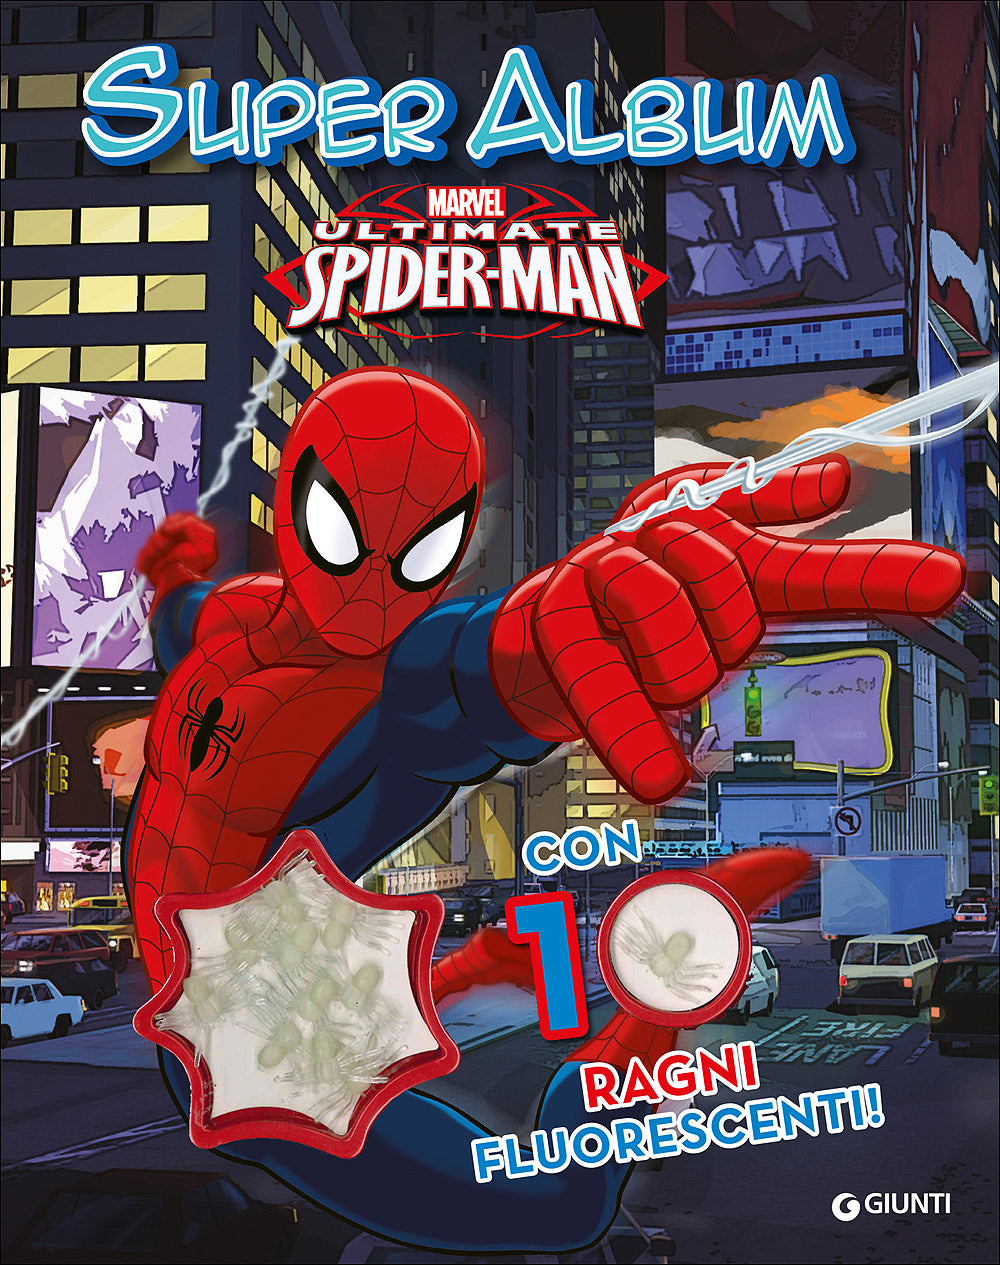 Spiderman 10 ragni Super Album::Con 10 ragni fluorescenti!